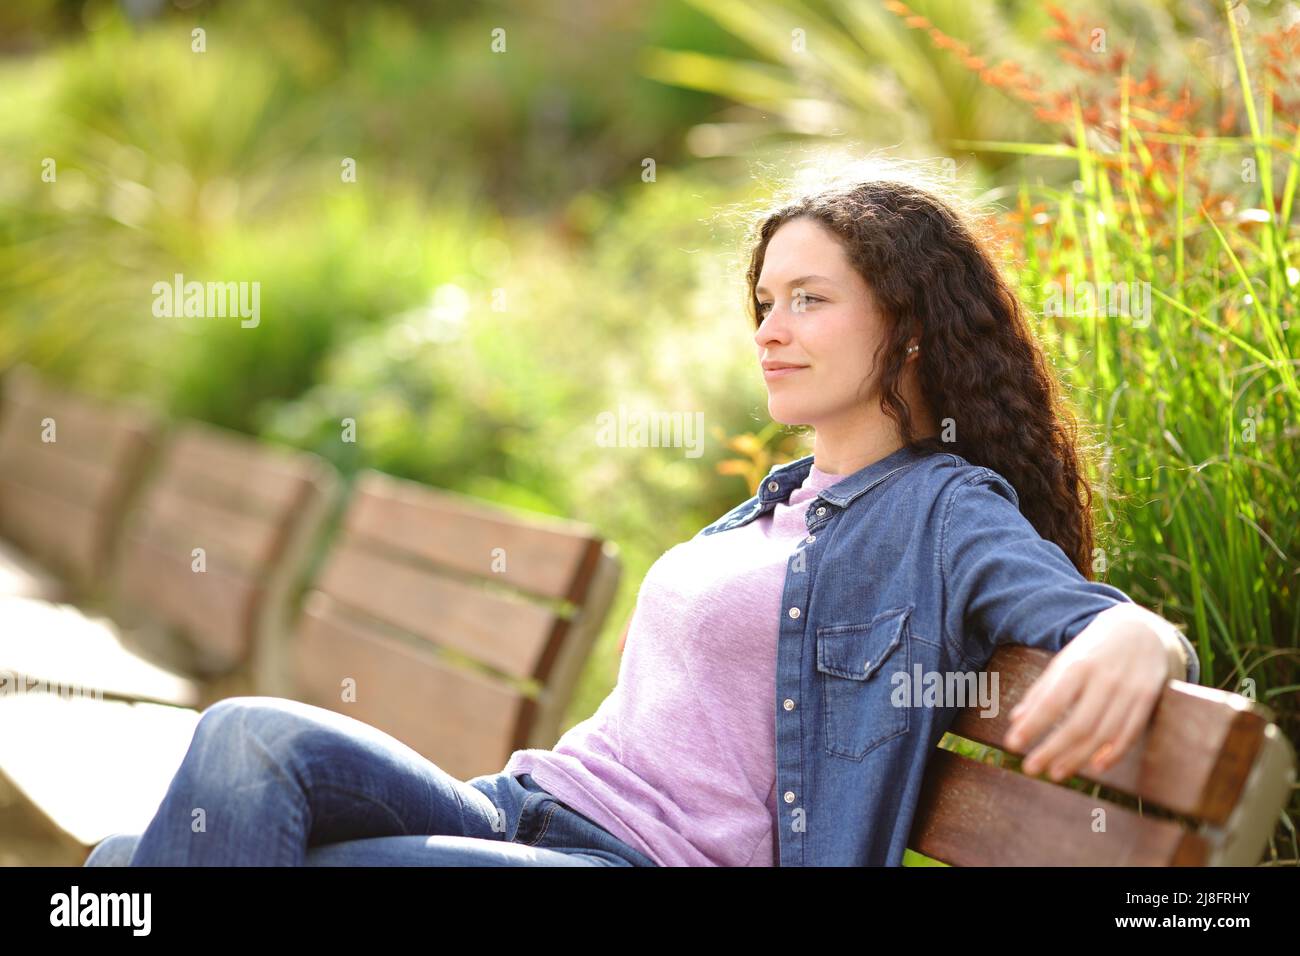 Entspannte Frau, die von einer Bank in einem Park aus die Aussicht betrachtet Stockfoto